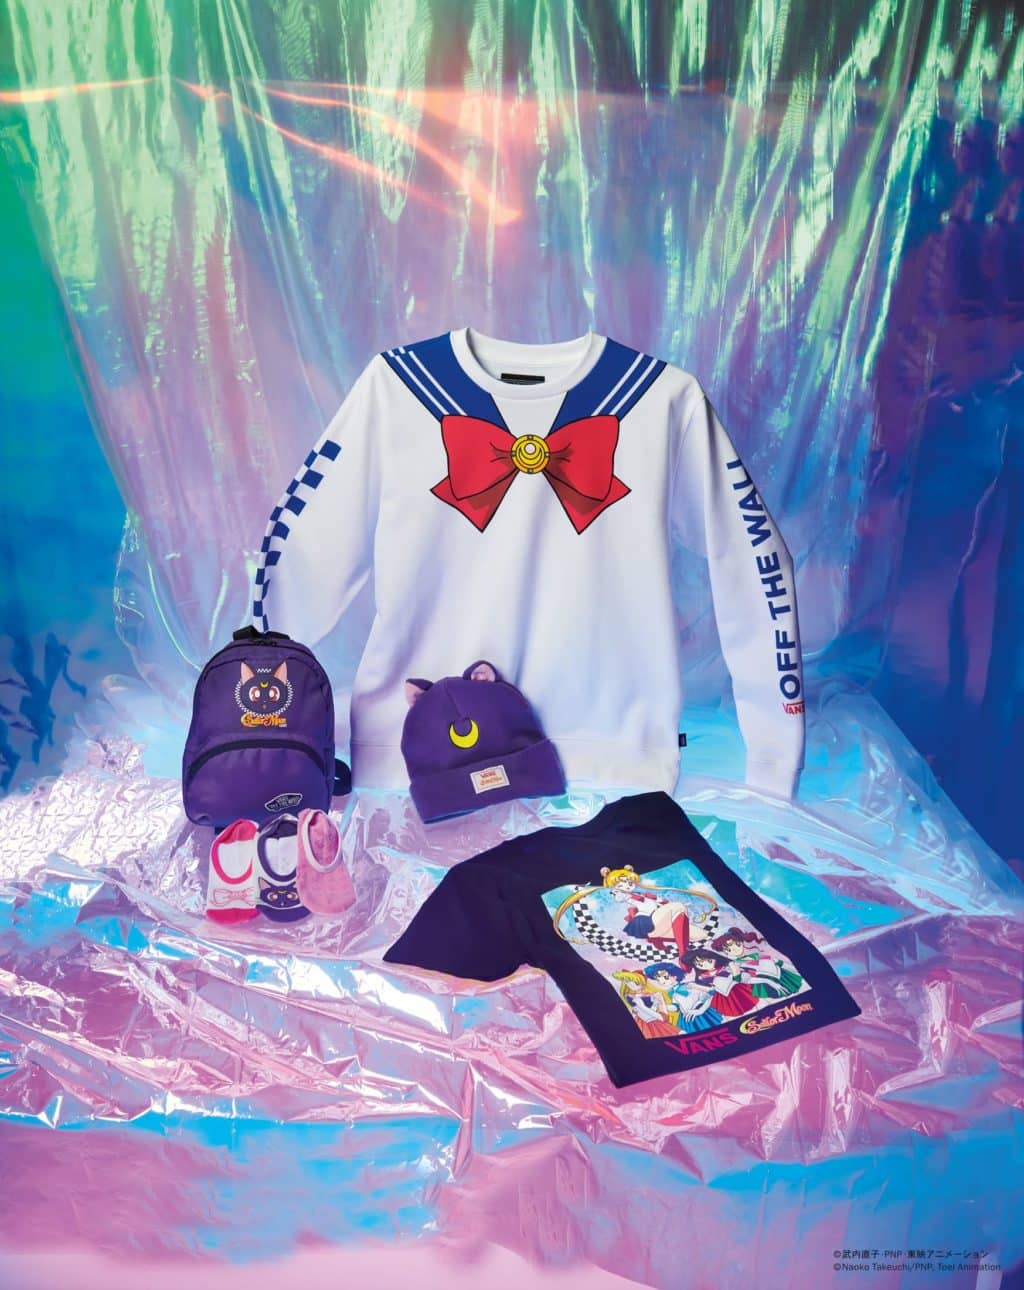 Vans lança coleção de Sailor Moon - GKPB - Geek Publicitário